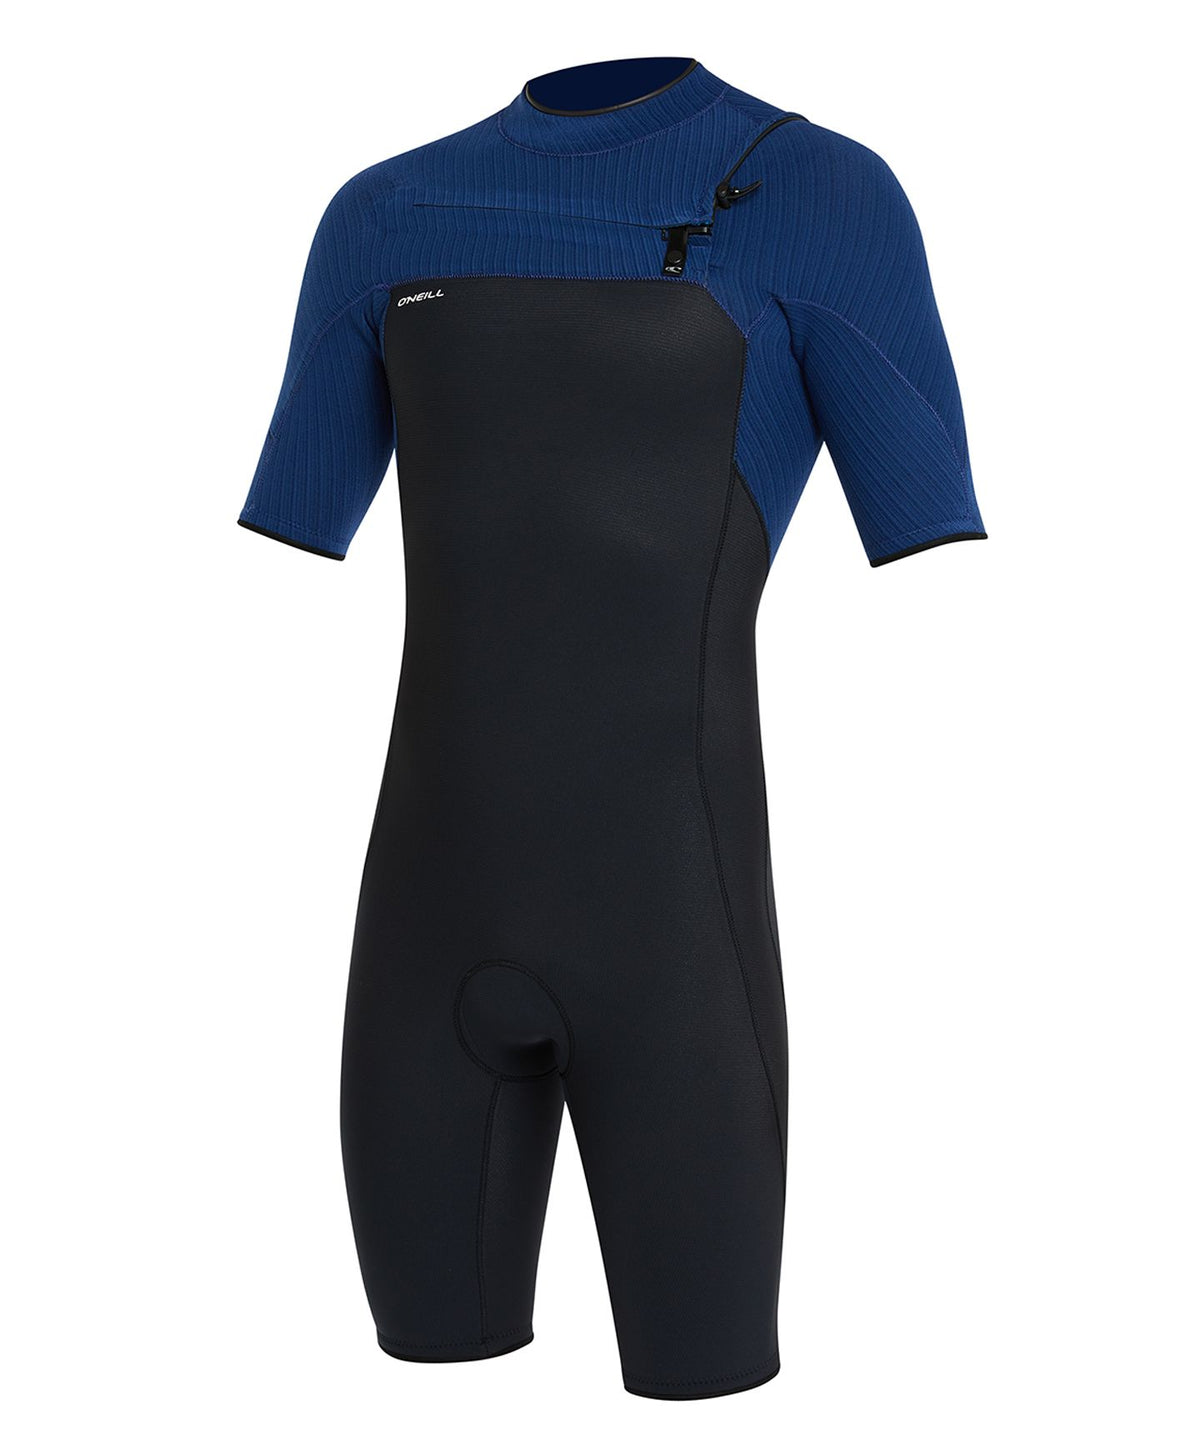 Hyperfreak 2mm Short Sleeve Springsuit Chest Zip Wetsuit - Black Marine